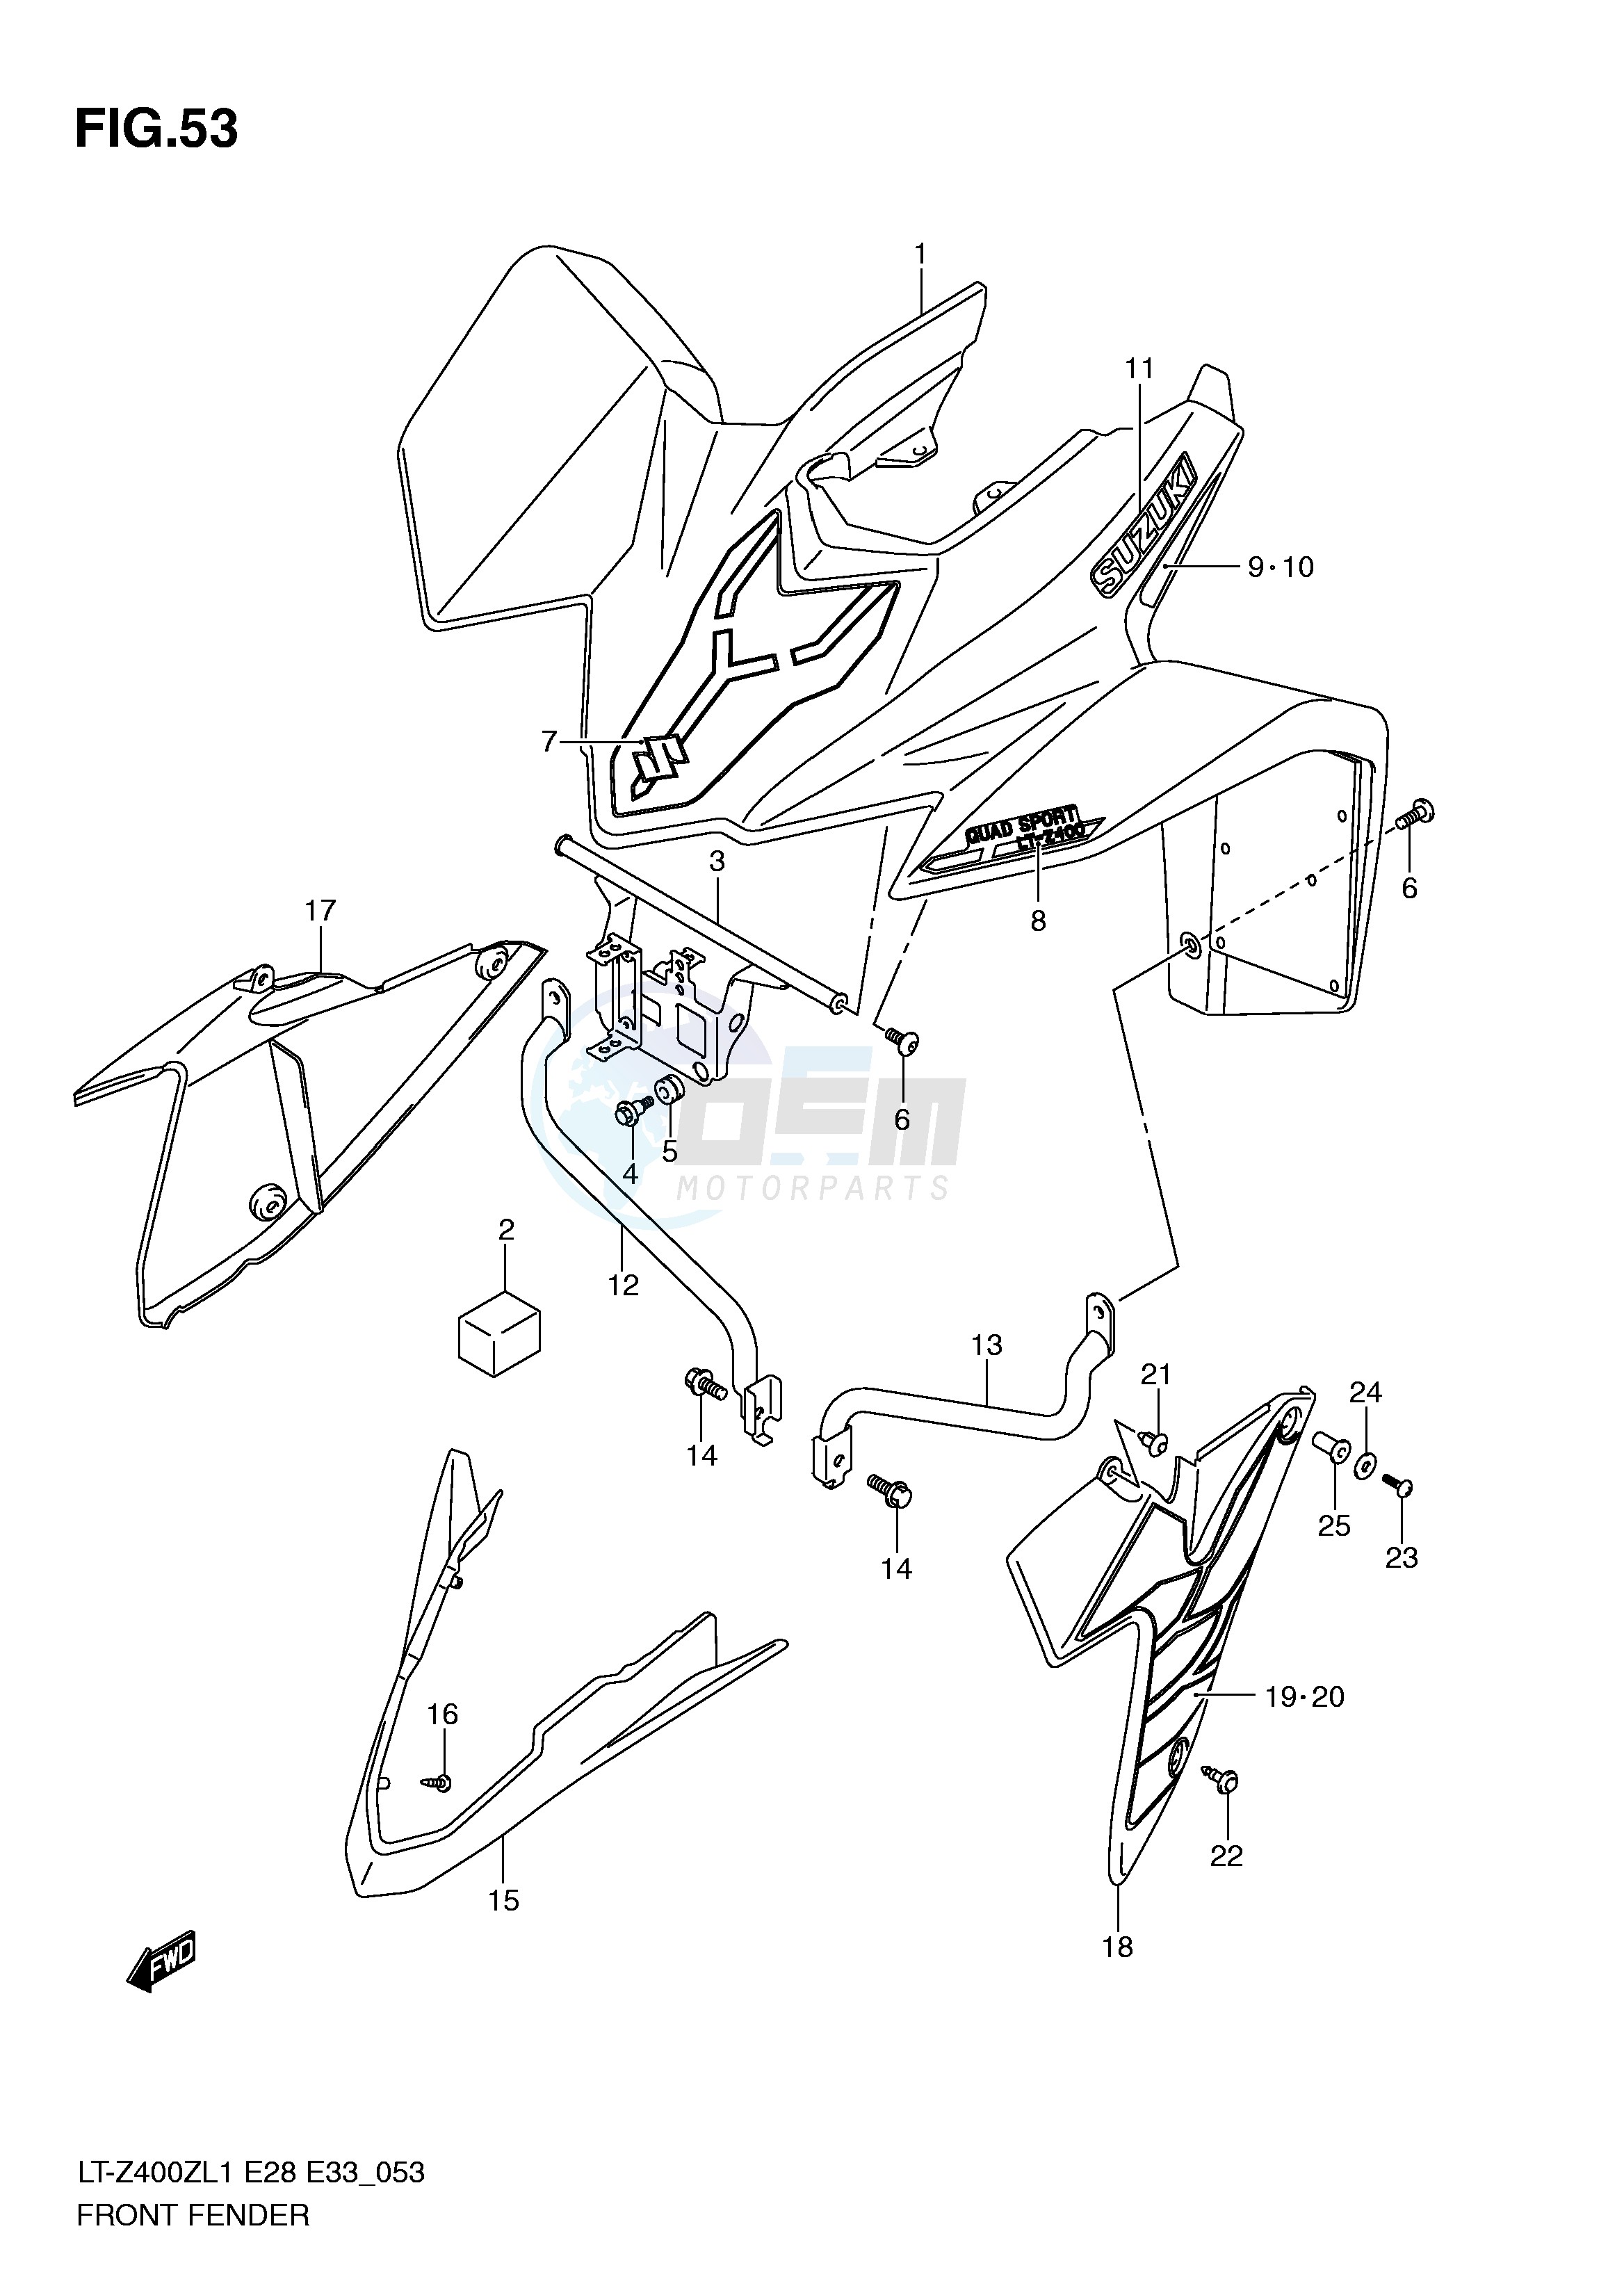 FRONT FENDER (LT-Z400ZL1 E33) blueprint